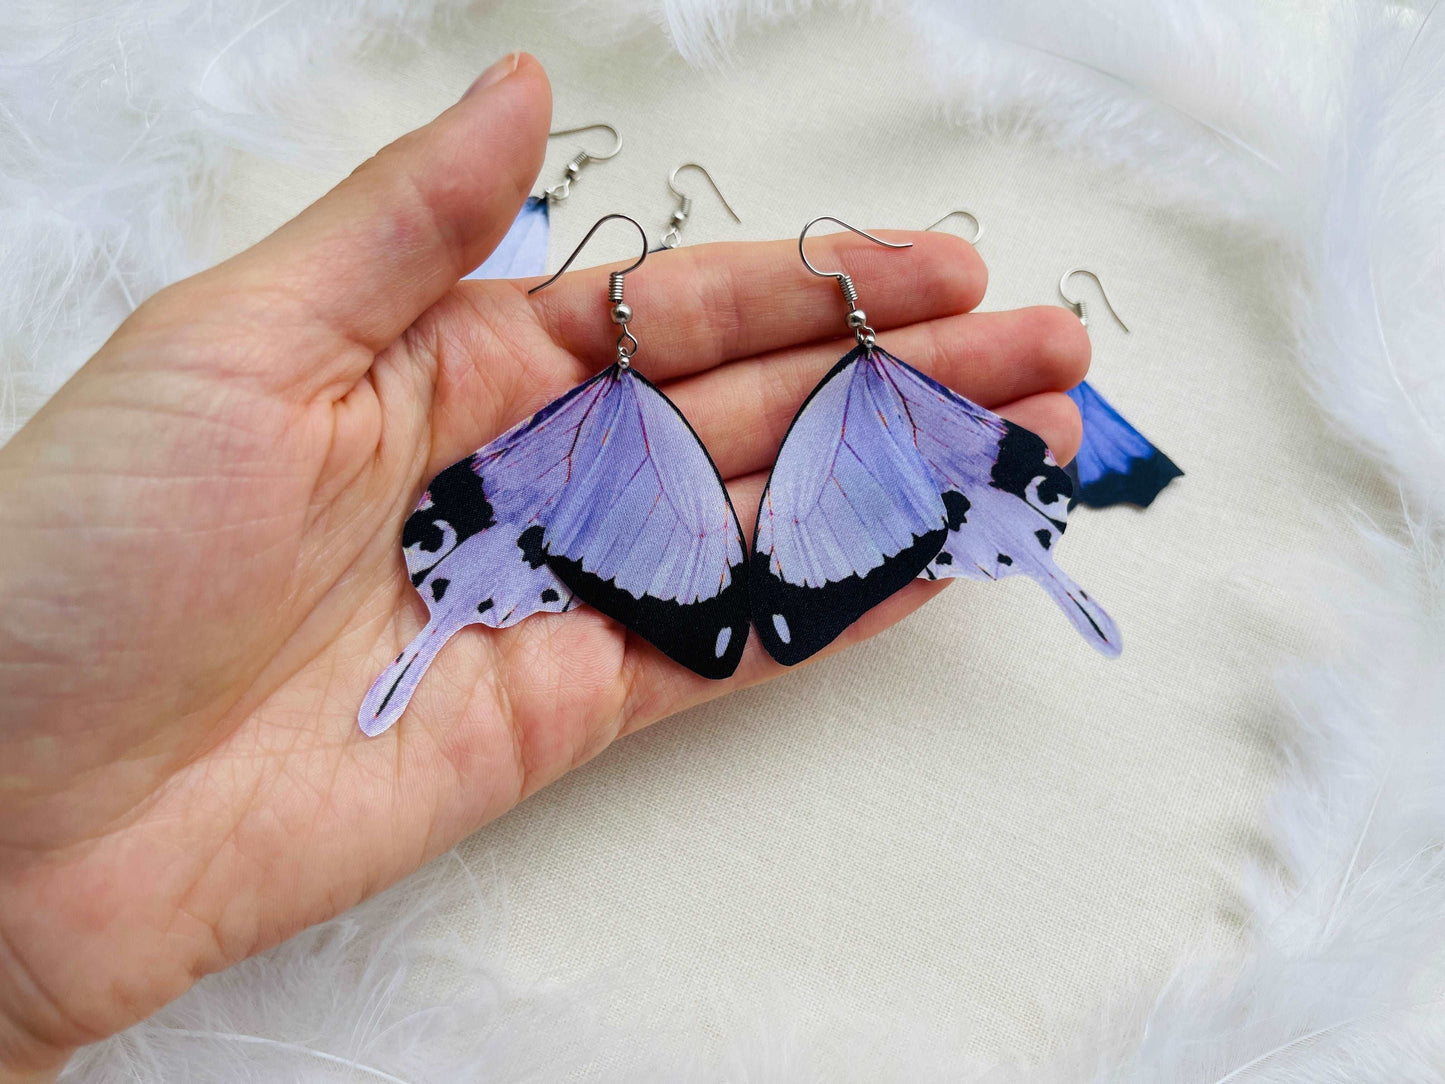 Lilac butterfly wings earrings handmade of silk